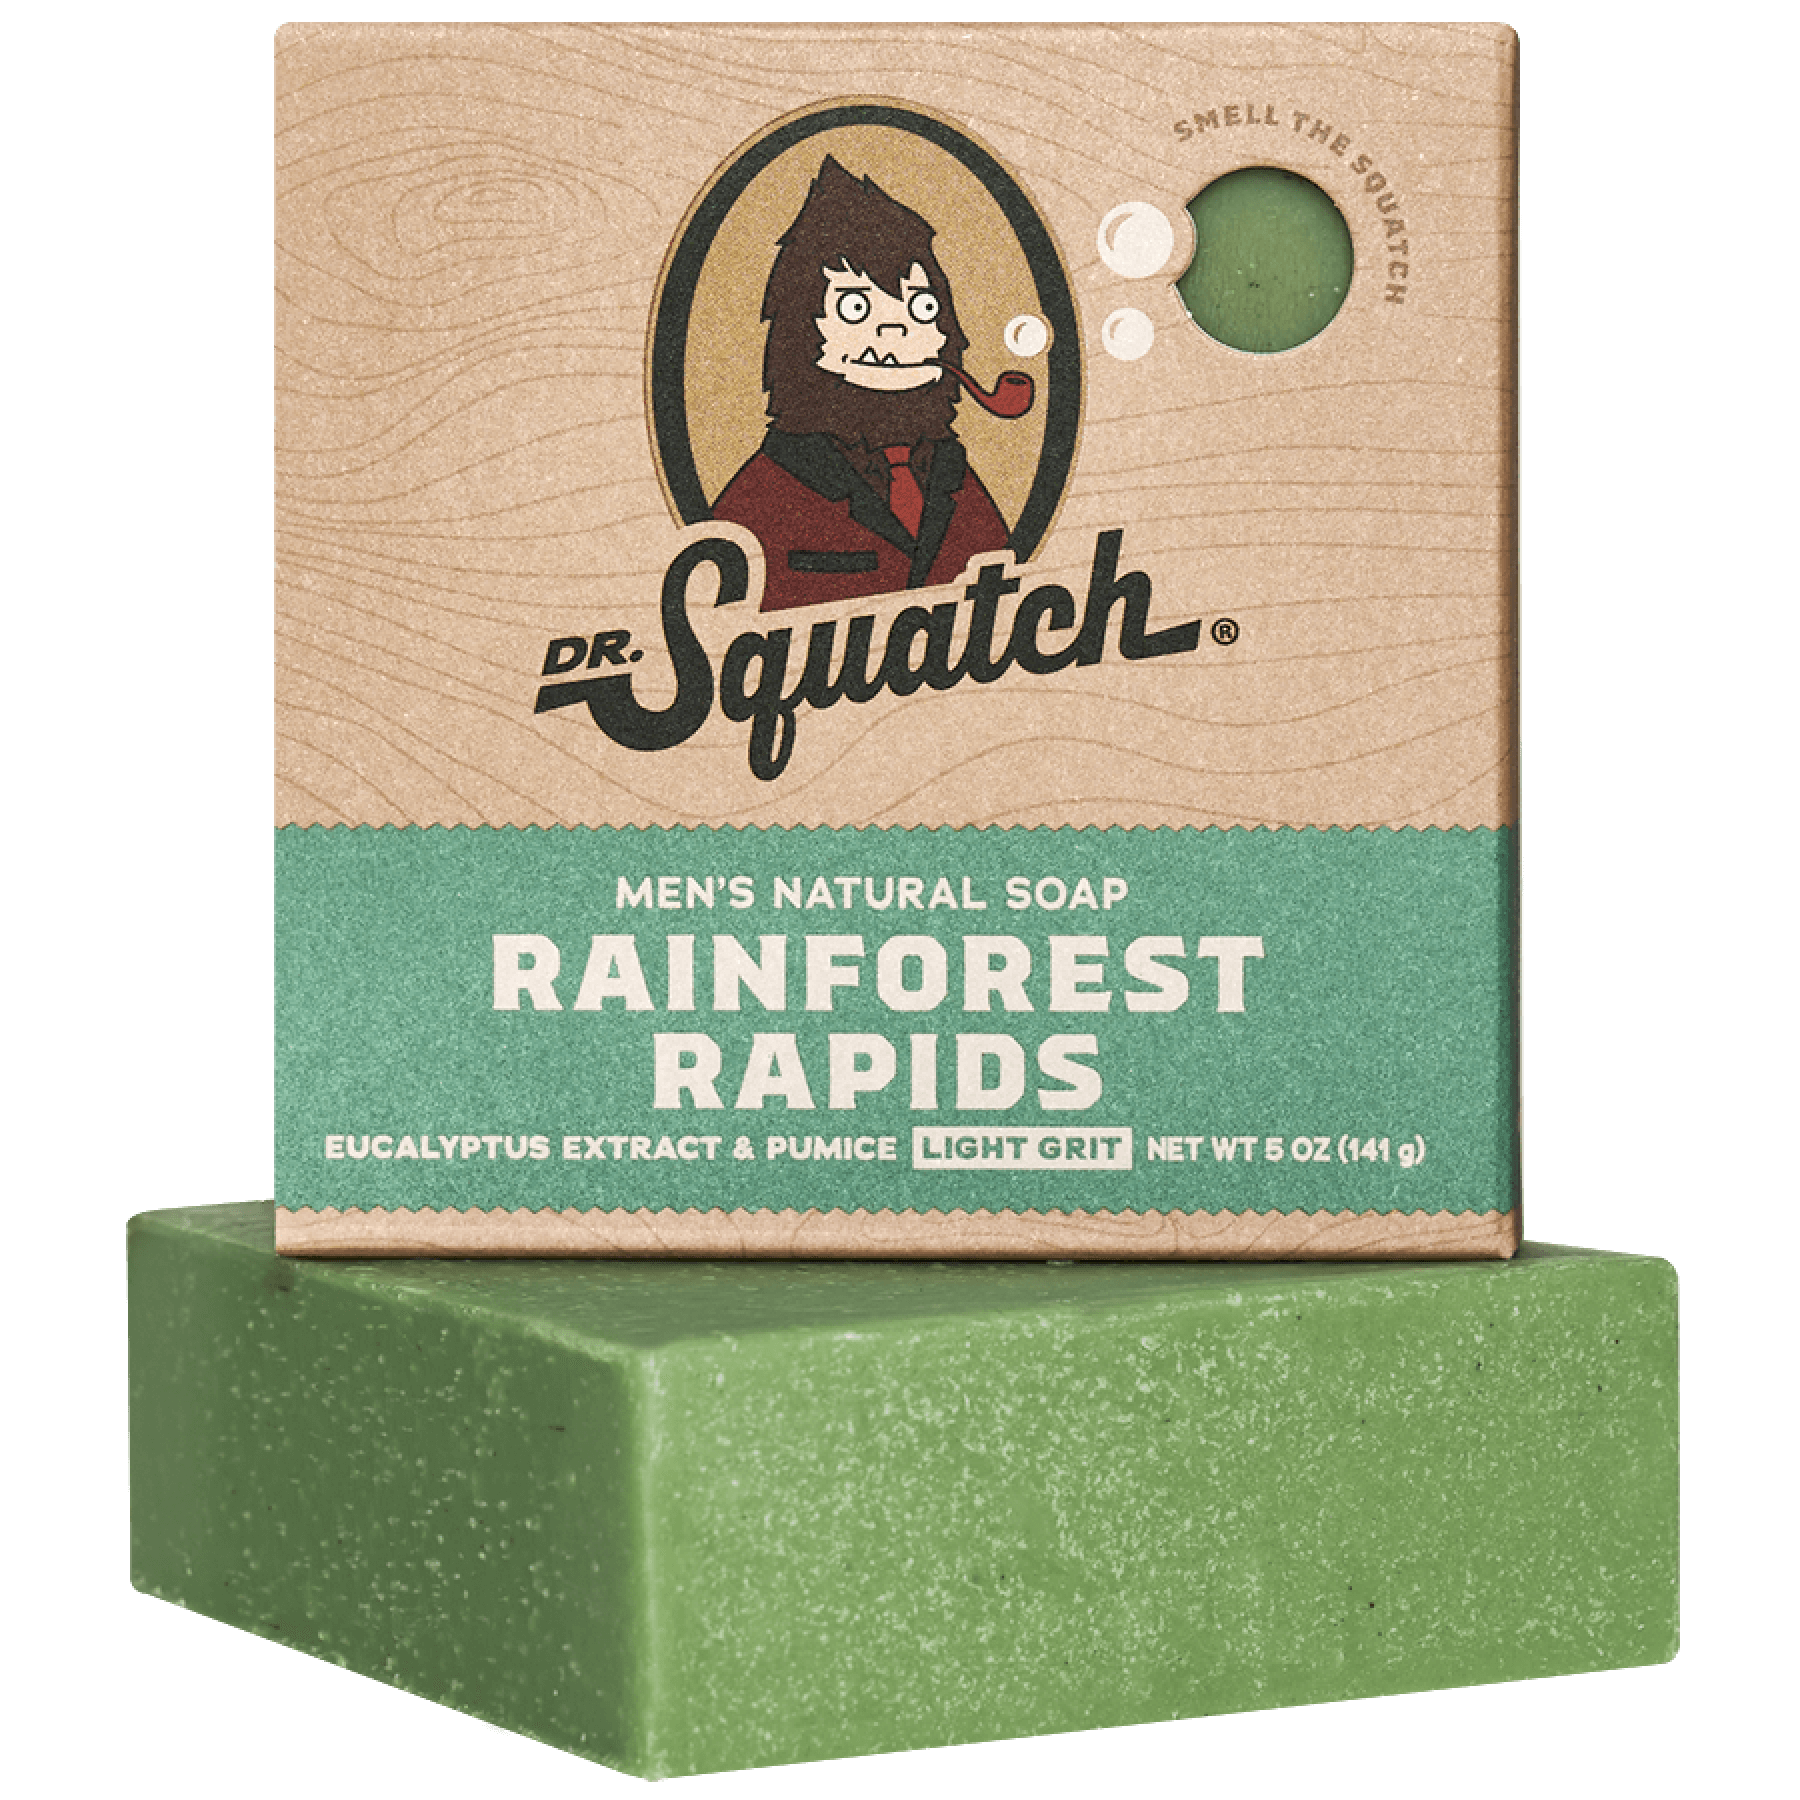 Rainforest Rapids - Dr. Squatch